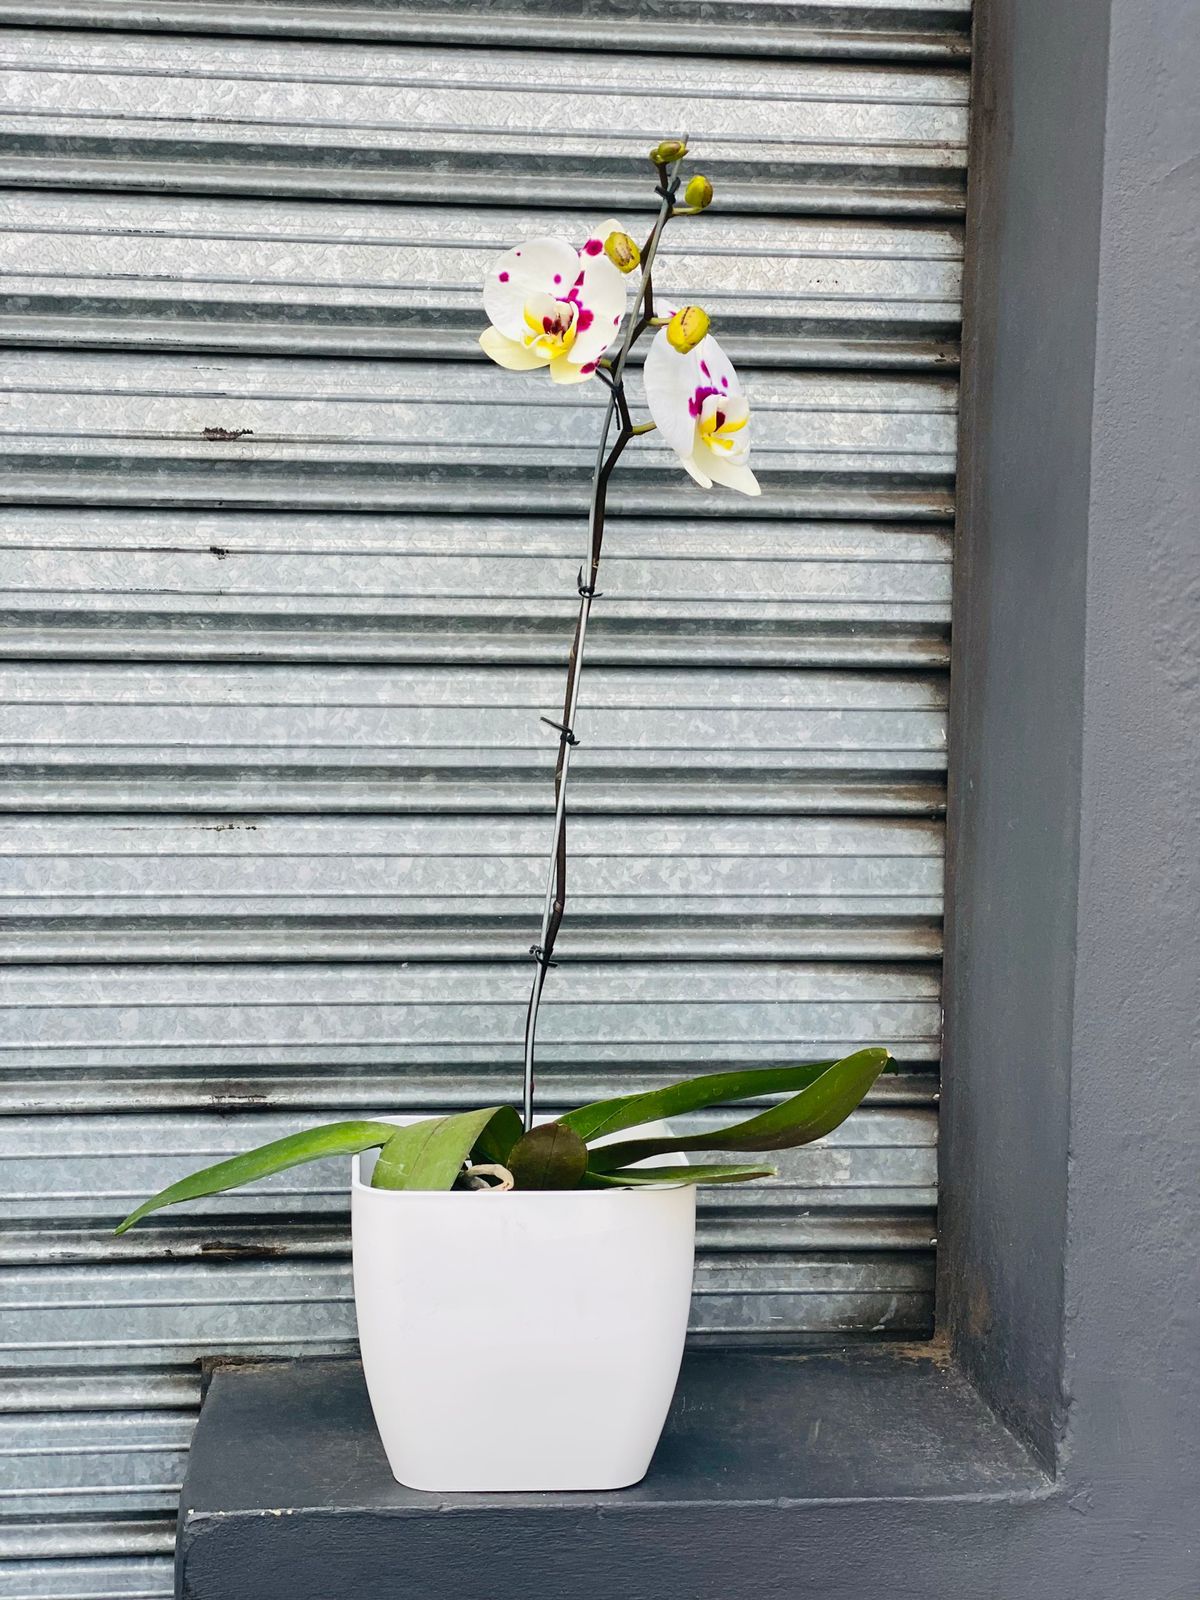 Orquidea Phaleanopsis - Mancha Matizada - Díselo con Flores